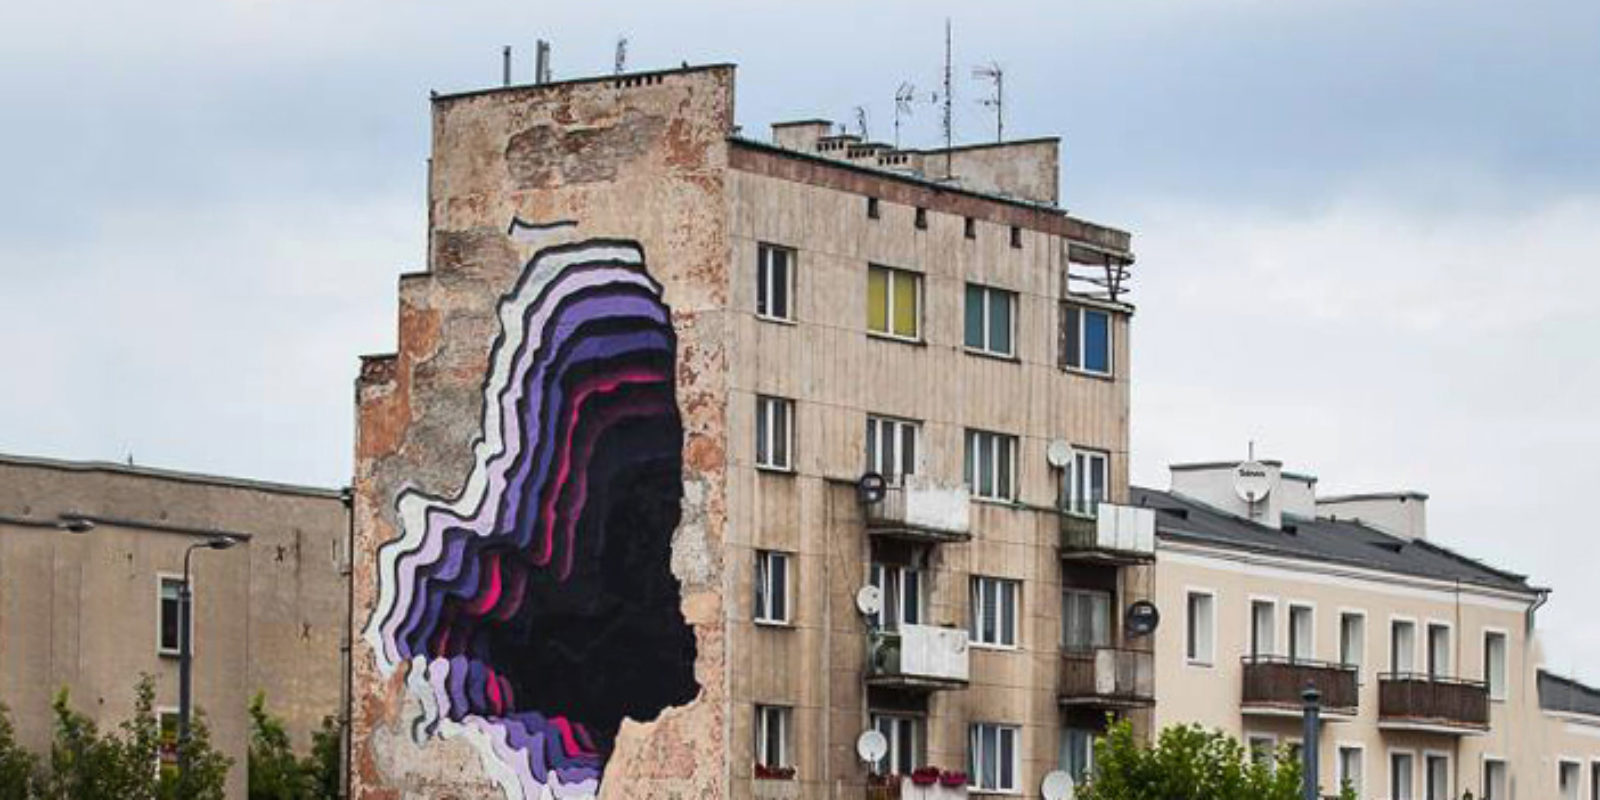 1010-street-art-mural-street-art-doping-in-warsaw-0